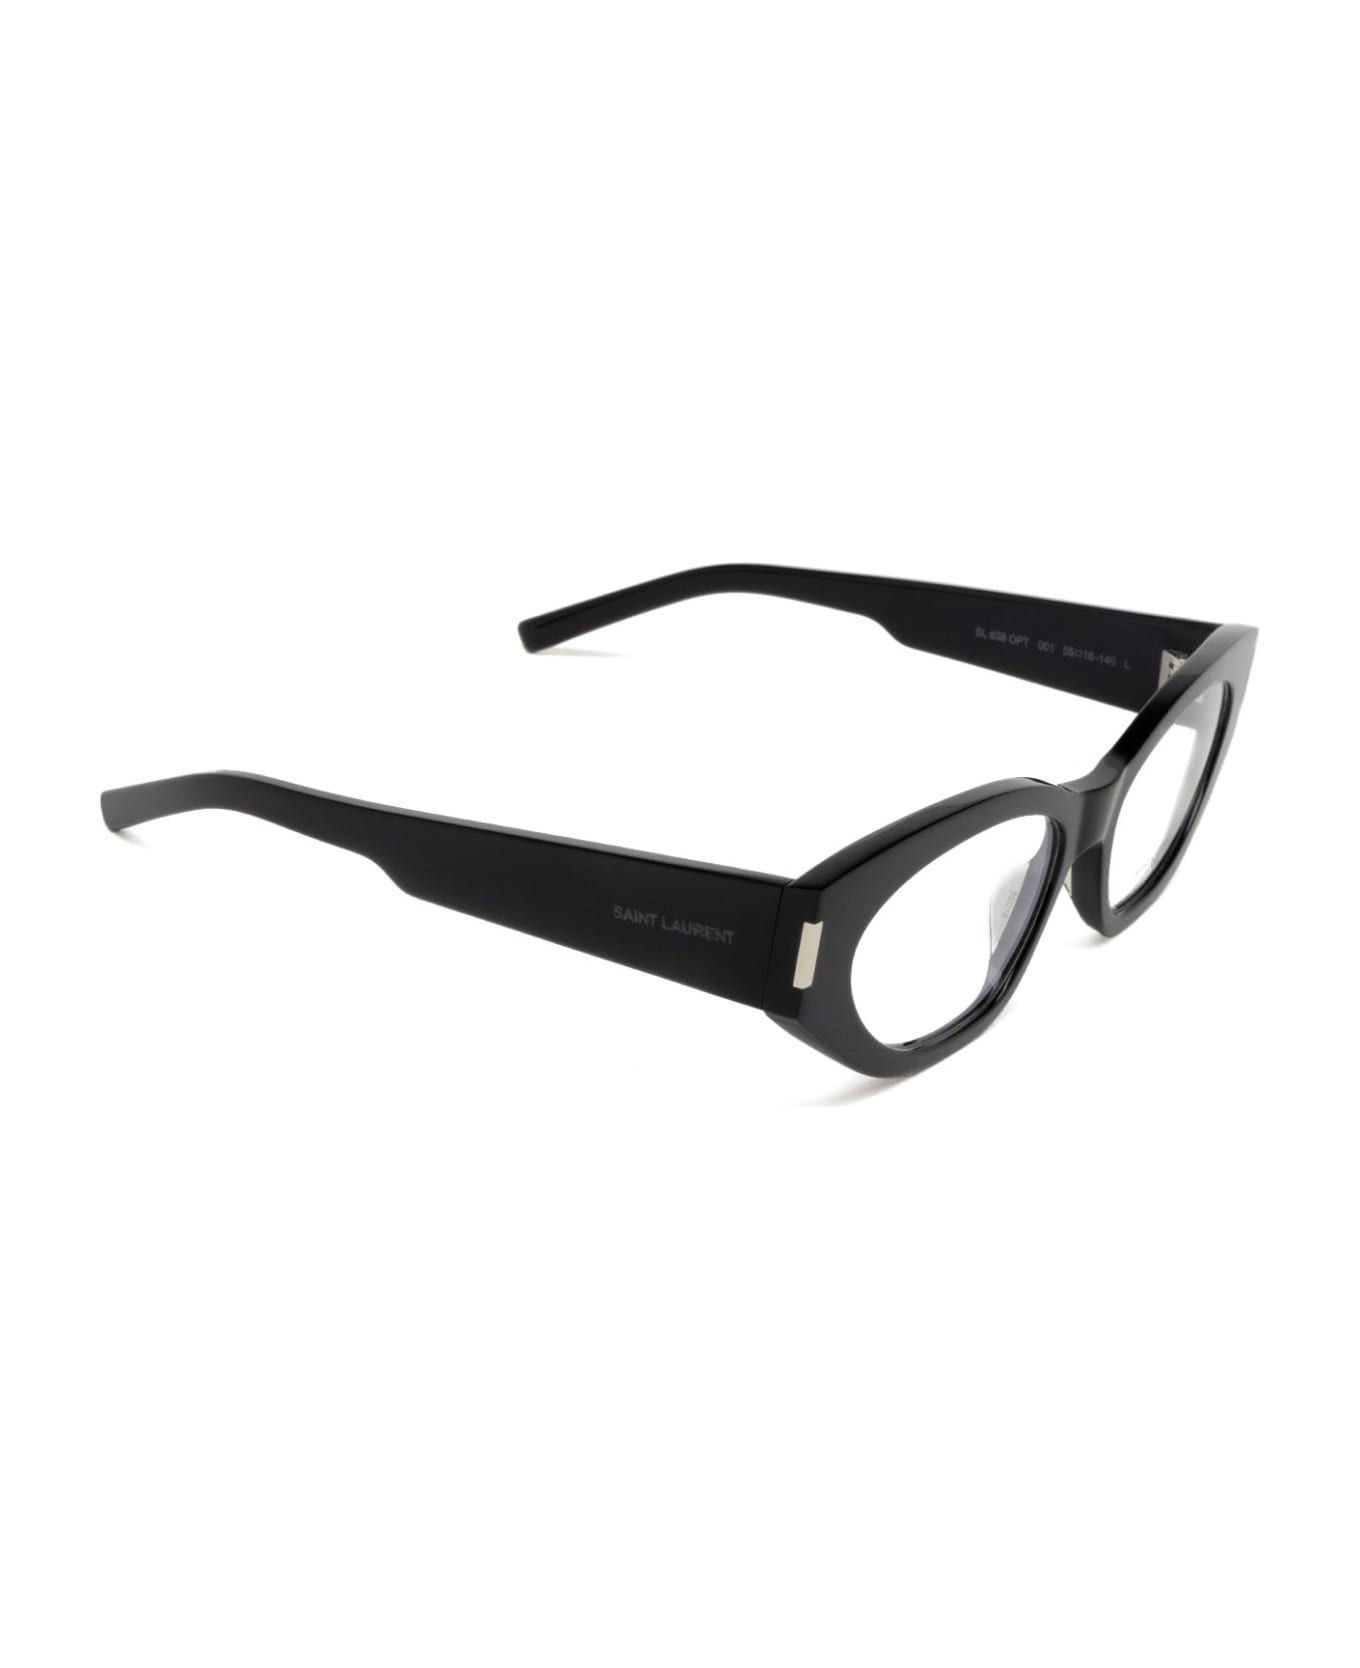 Saint Laurent Eyewear Sl 638 Opt Black Glasses - Black アイウェア